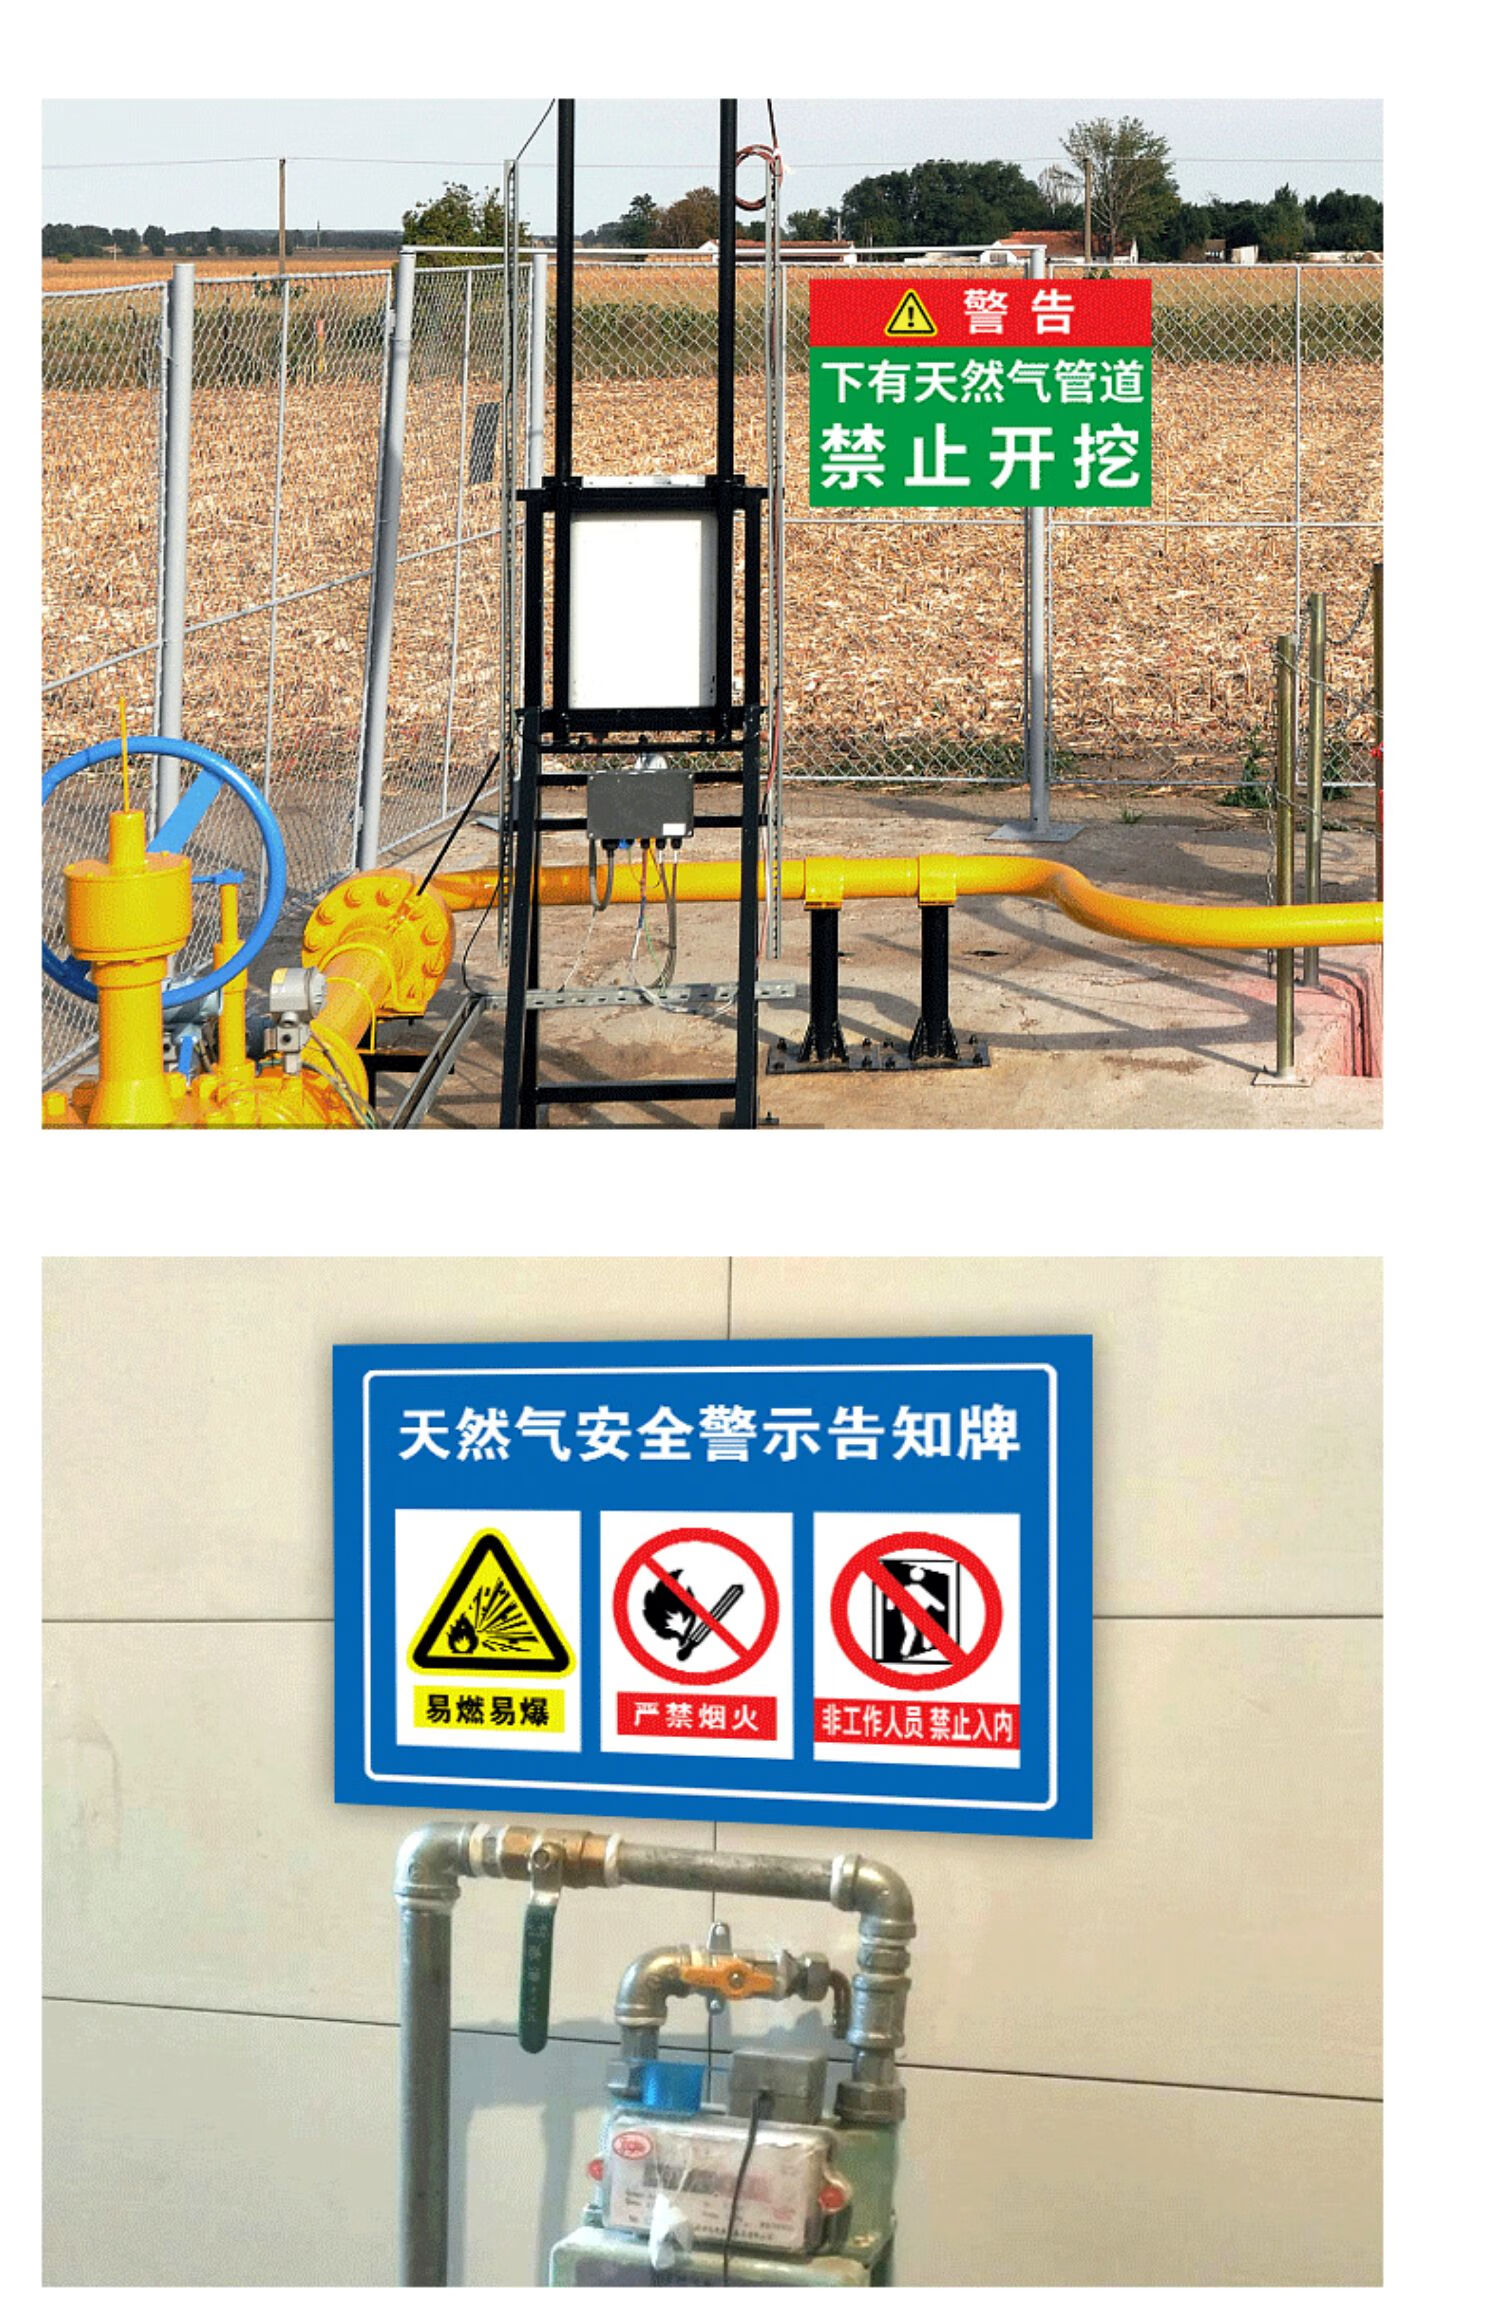 煤气区域警示标语图片